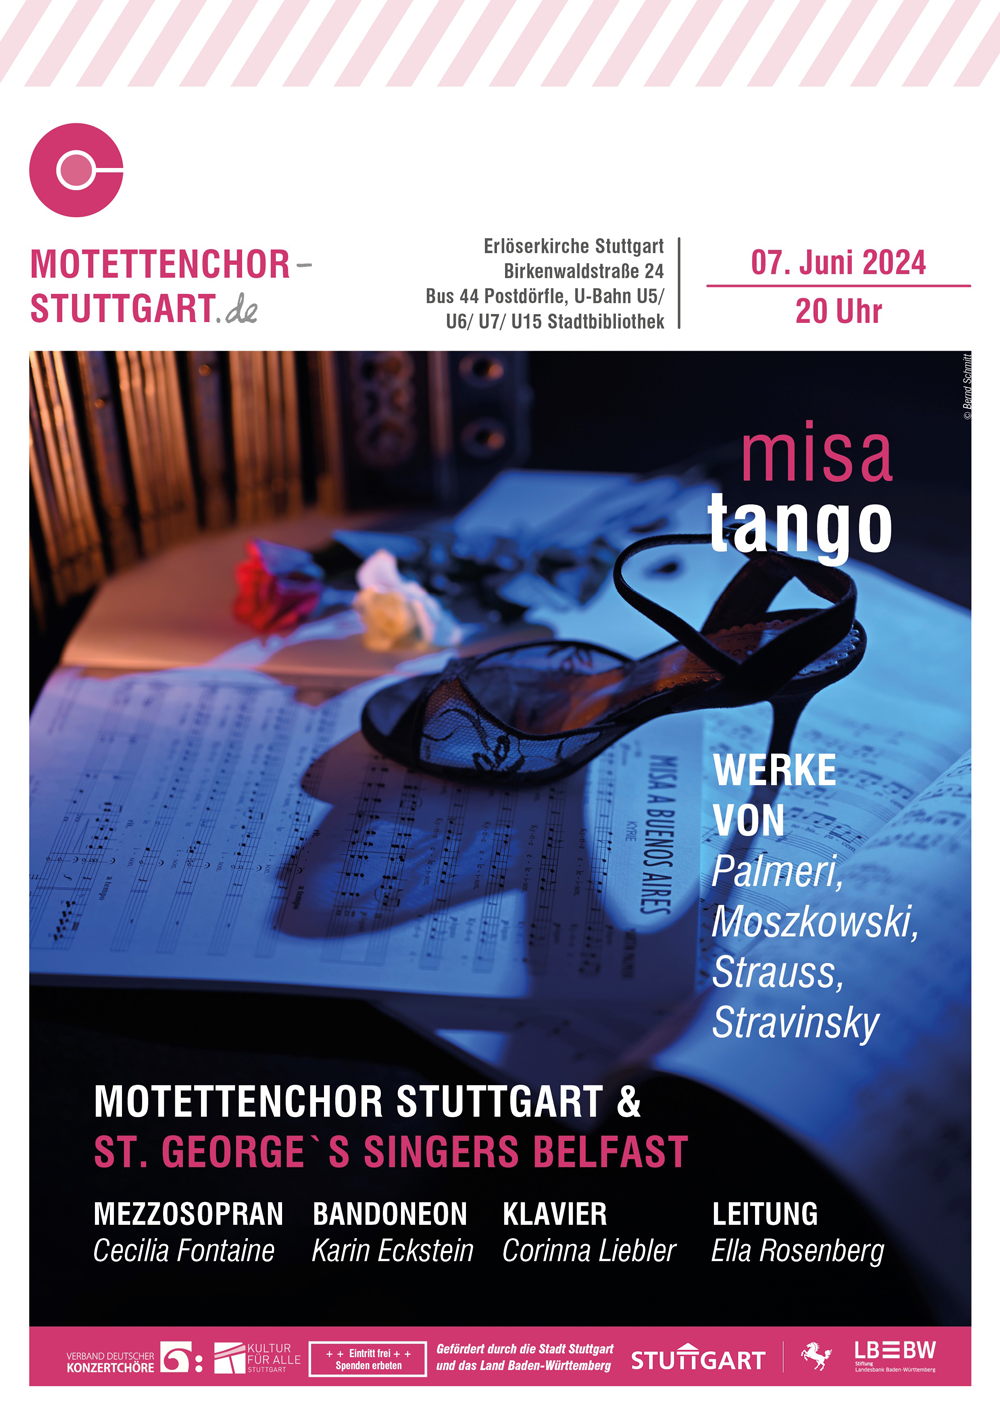 Bild des Plakates für das Konzert misa tango des Motettenchor Stuttgart